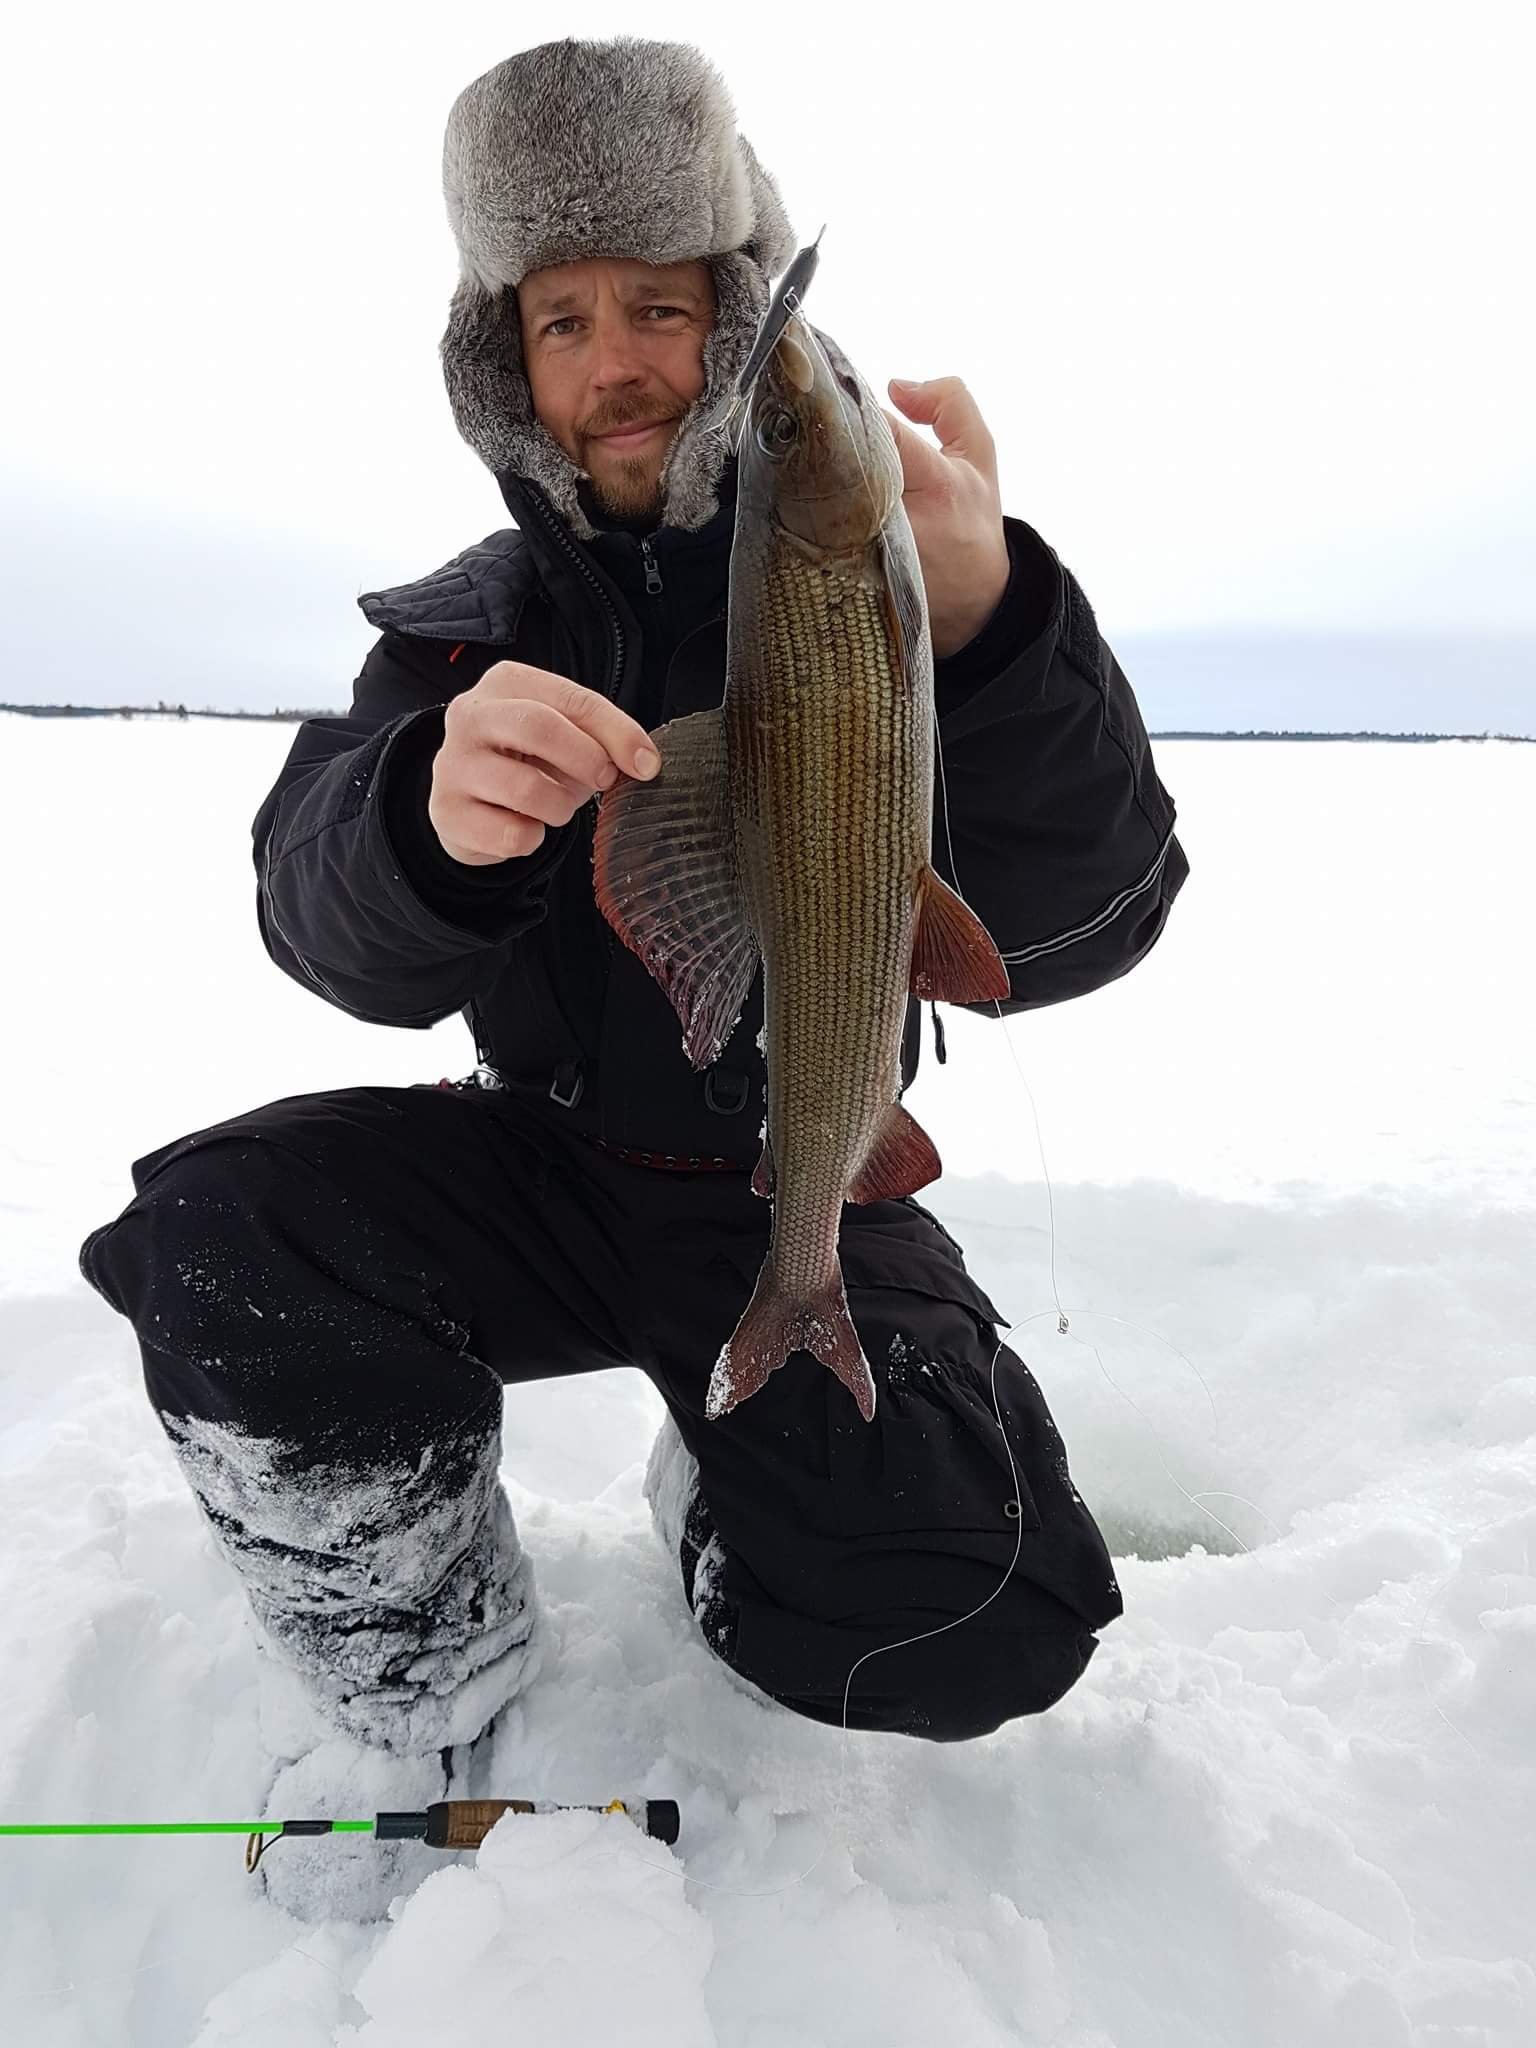 Kala-asiantuntija @LukeFinland Pohjoisen luonnossa, töissä ja vapaalla.